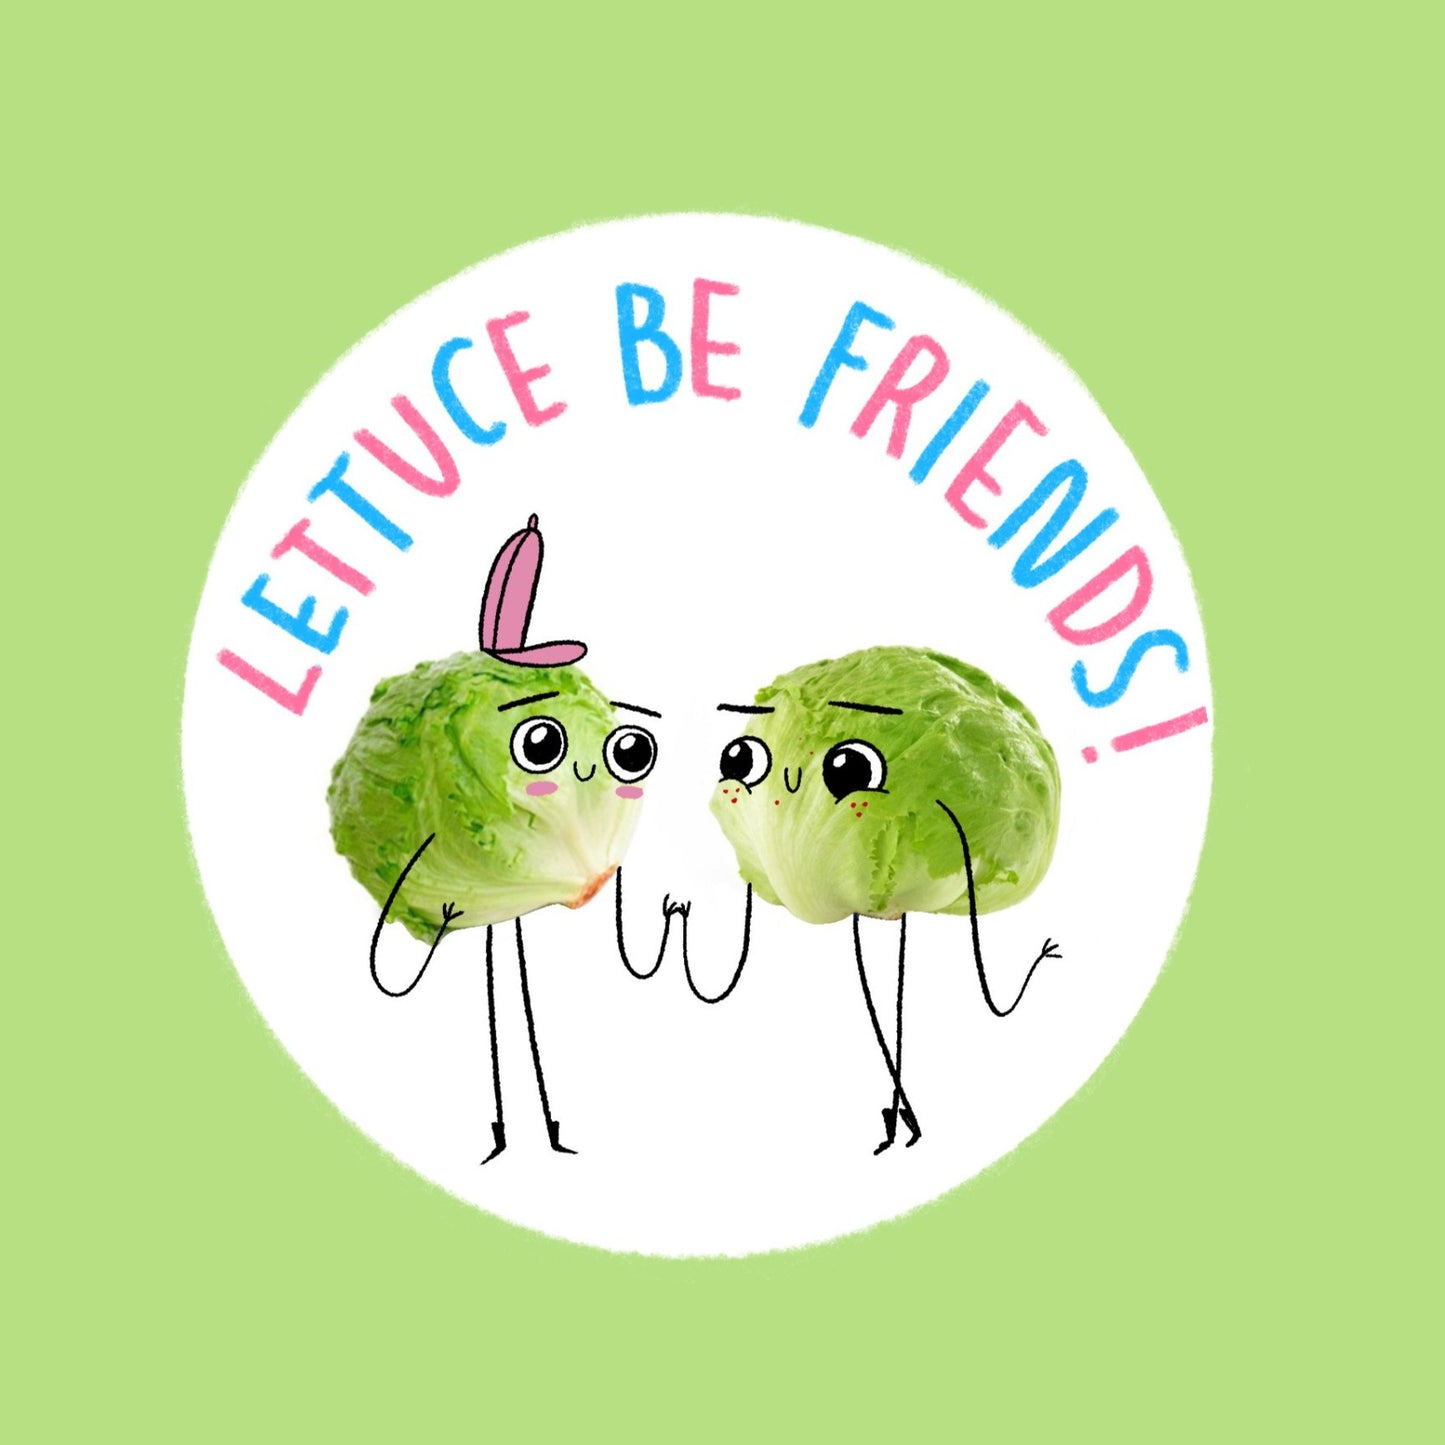 Lettuce Be Friends Sticker